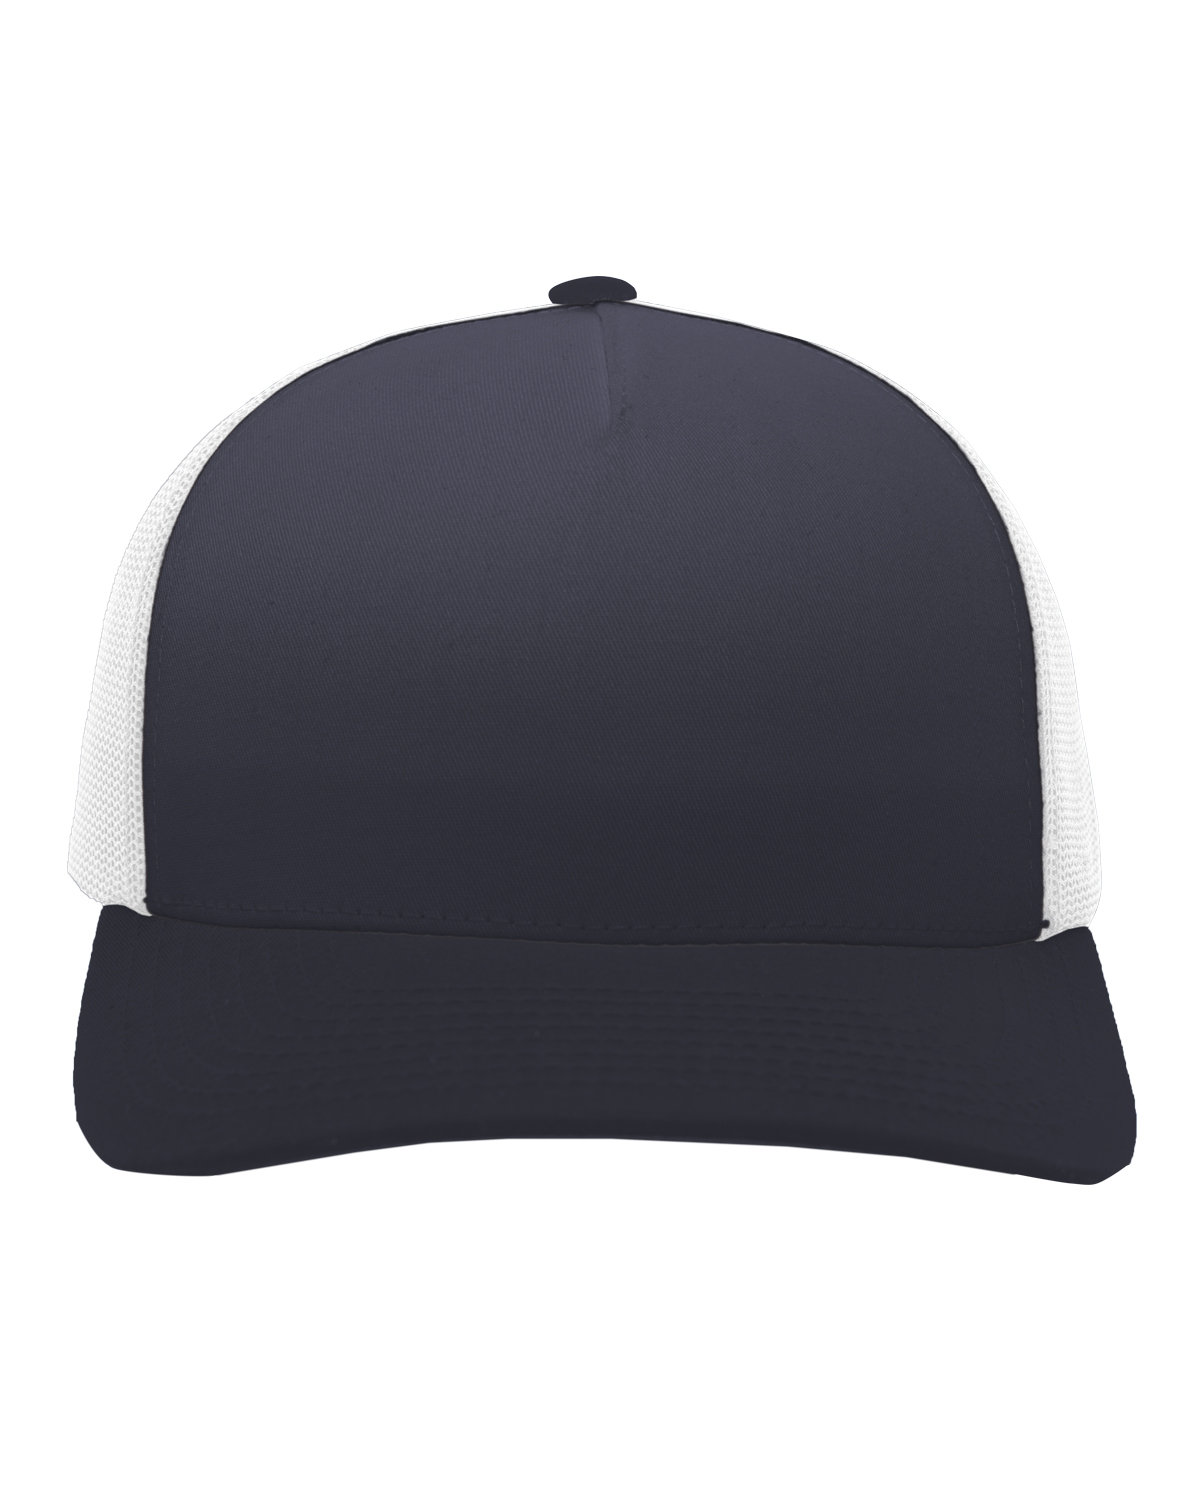 Snapback Trucker Cap-Pacific Headwear